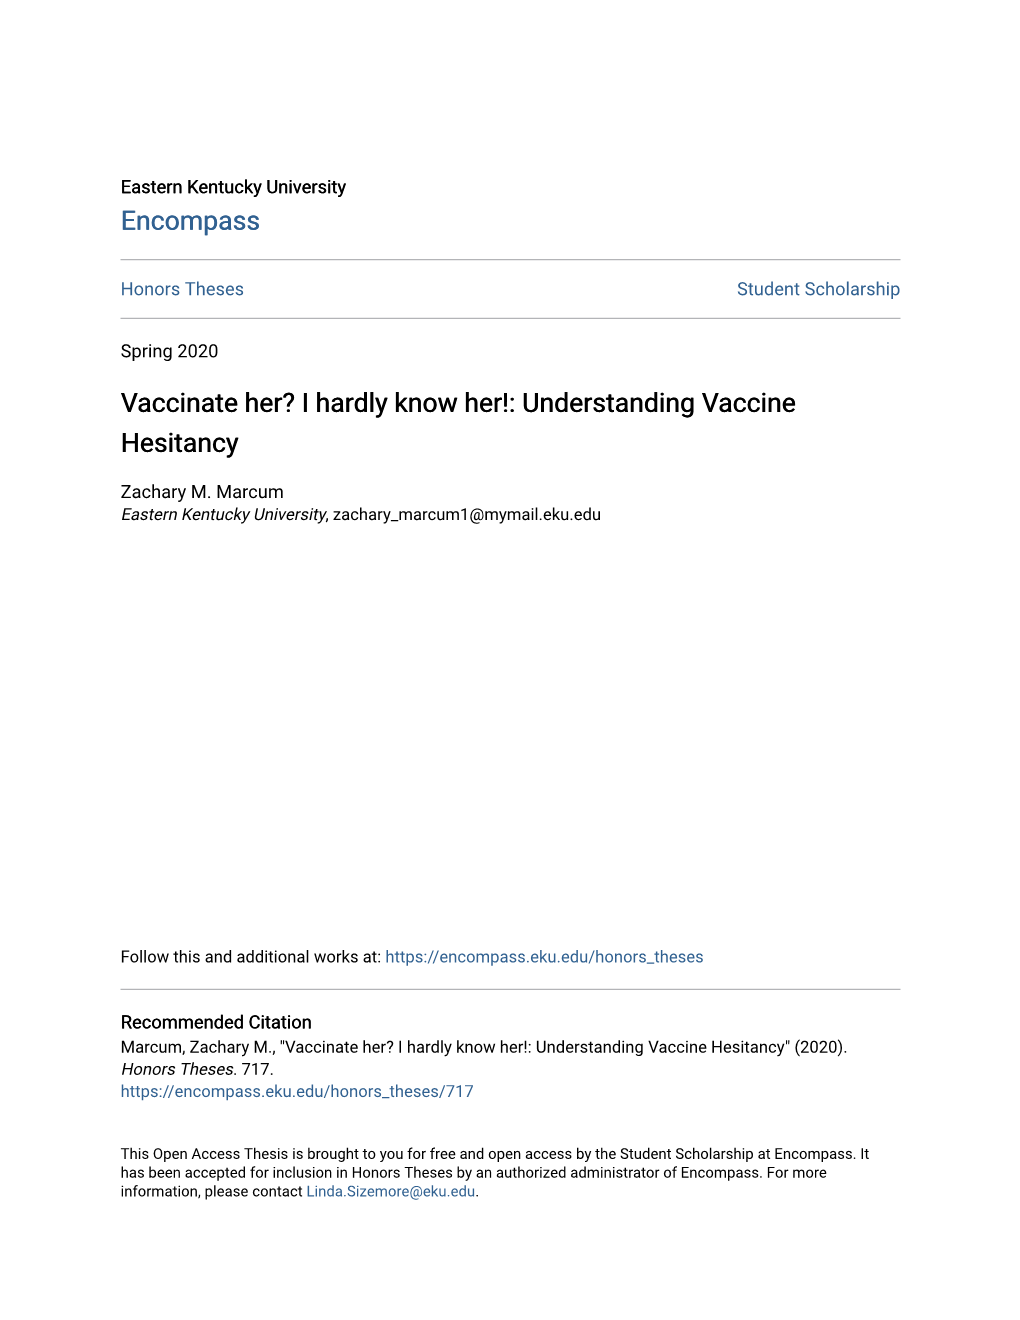 I Hardly Know Her!: Understanding Vaccine Hesitancy